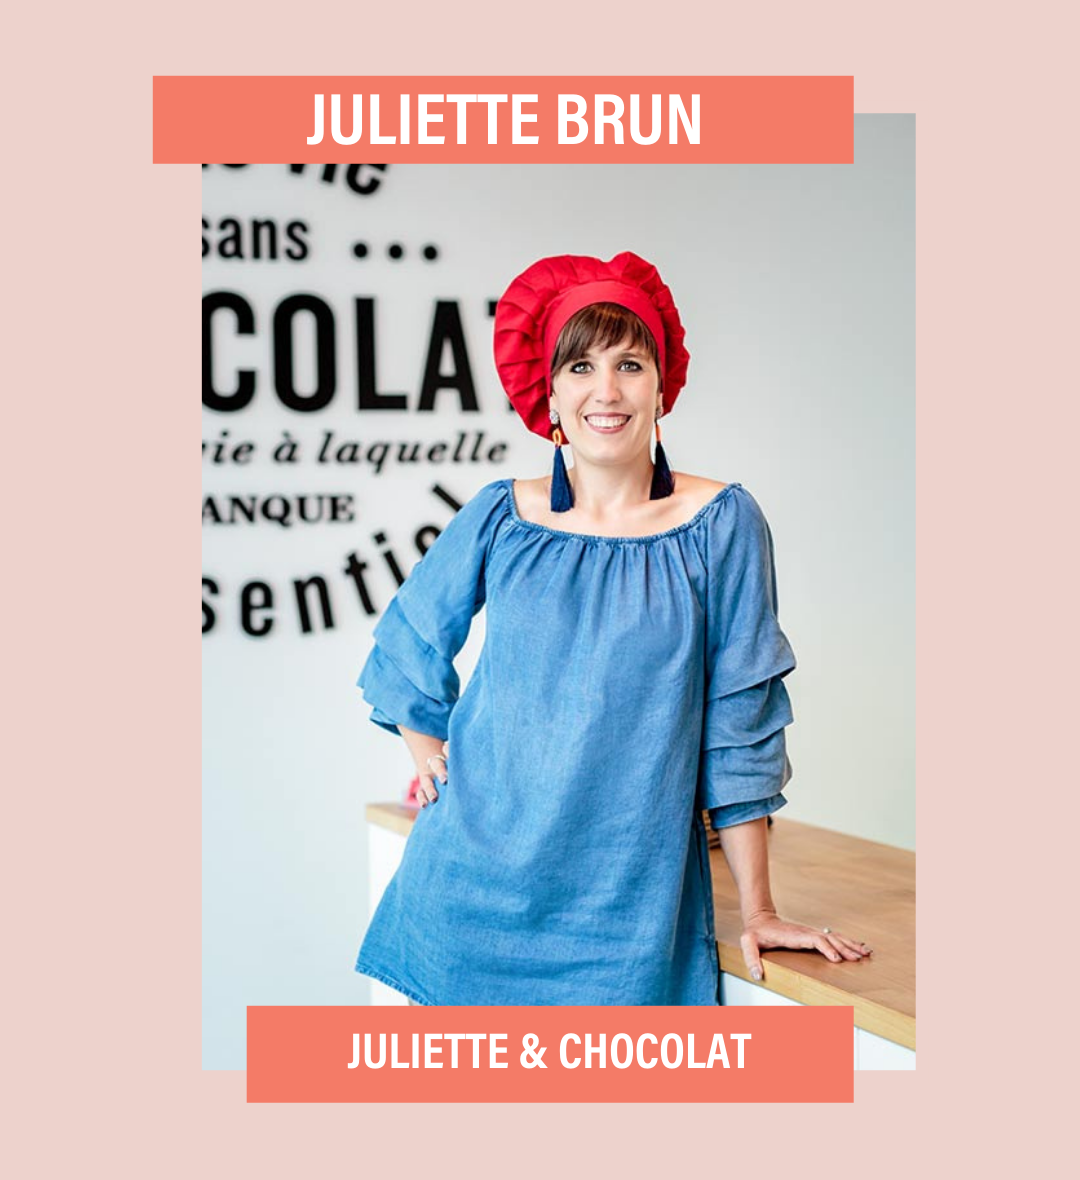 juliette brun.png